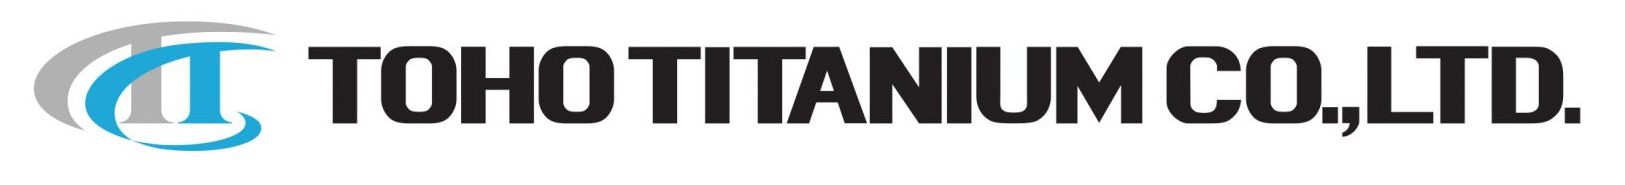 Toho Titanium Co. Ltd.